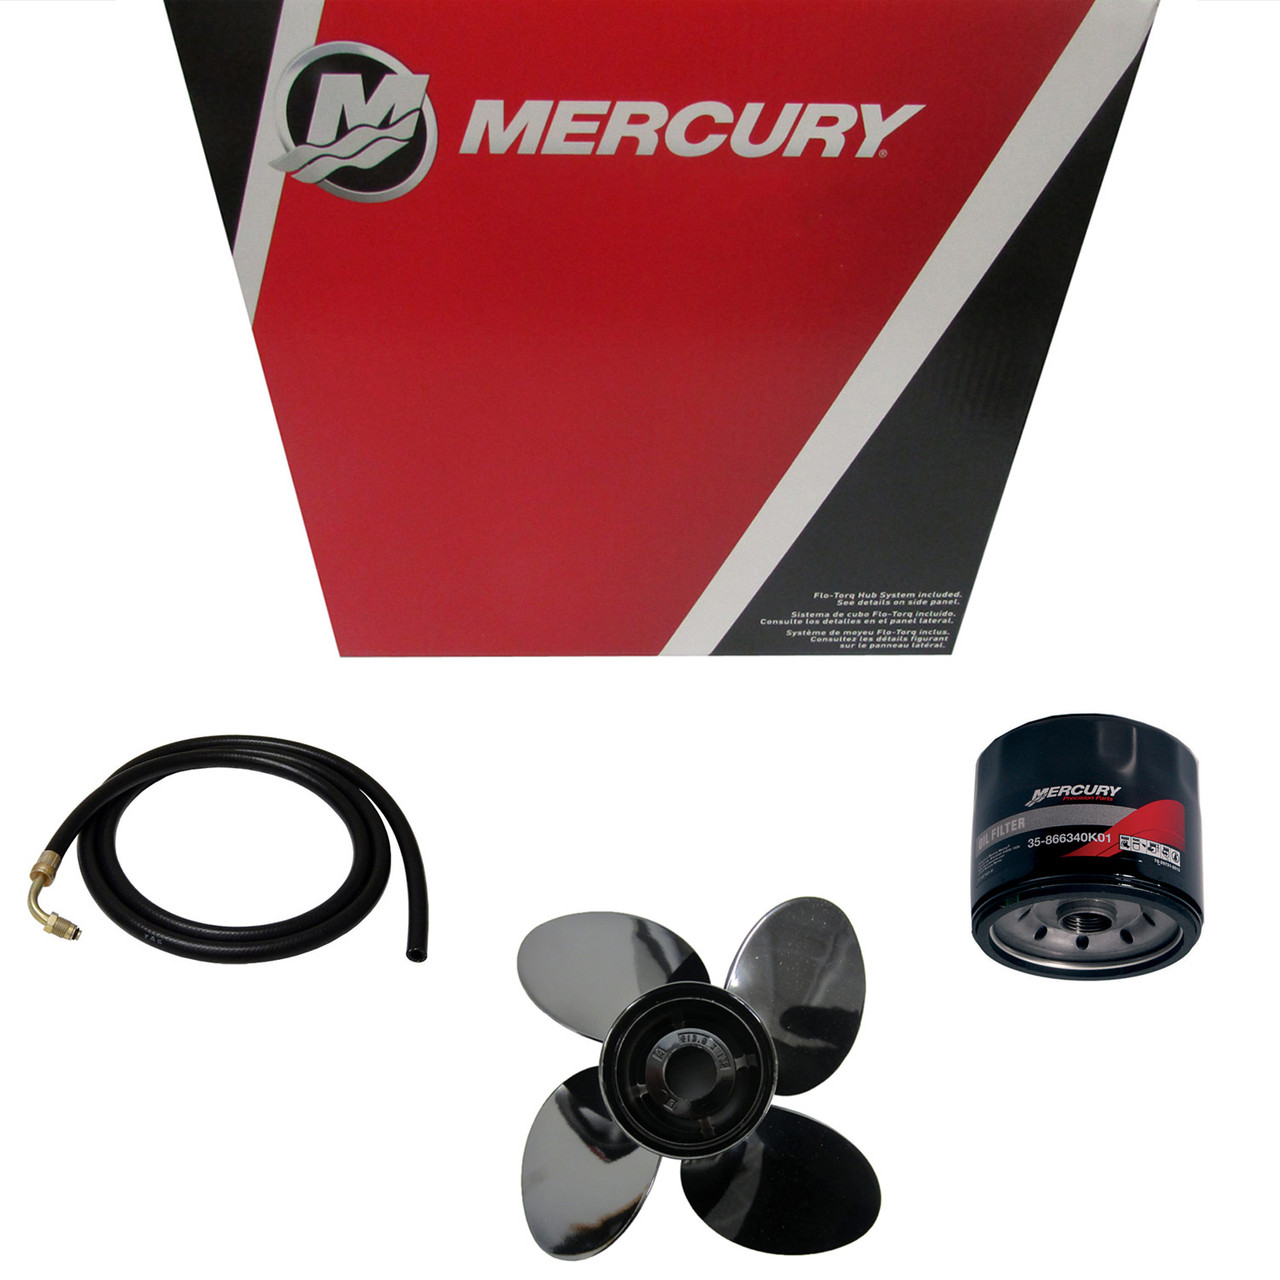 Mercury Marine / Mercruiser New OEM Mirg 14.6X23rh, 48-8M0151312